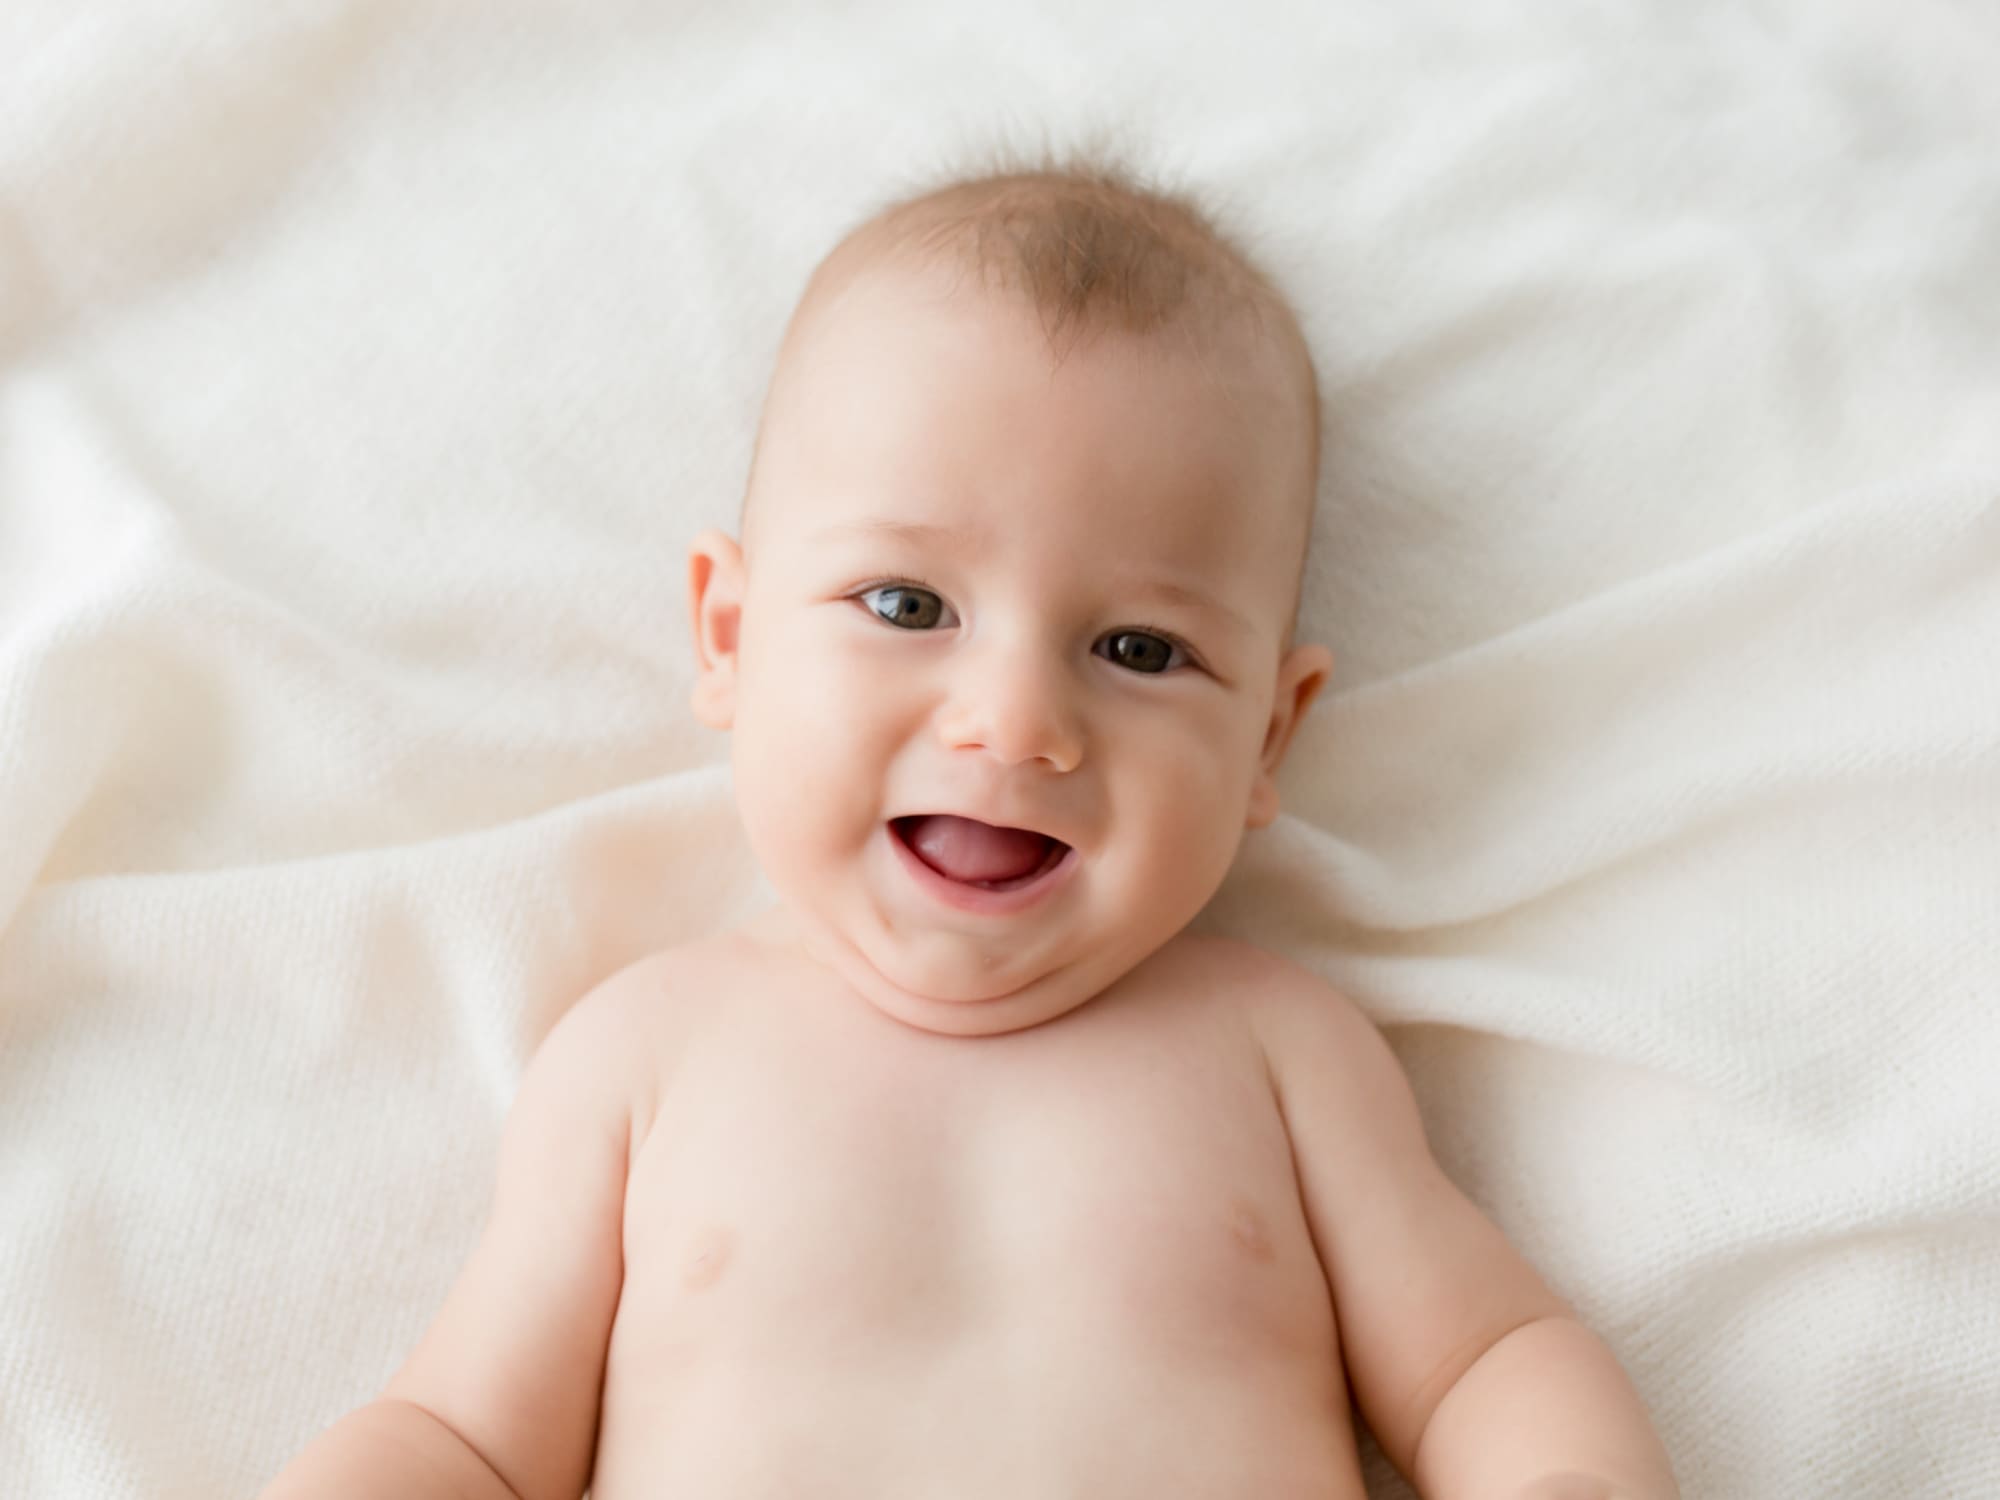 estudio fotografia alicante recien nacidos bebes embarazo fotografa natural